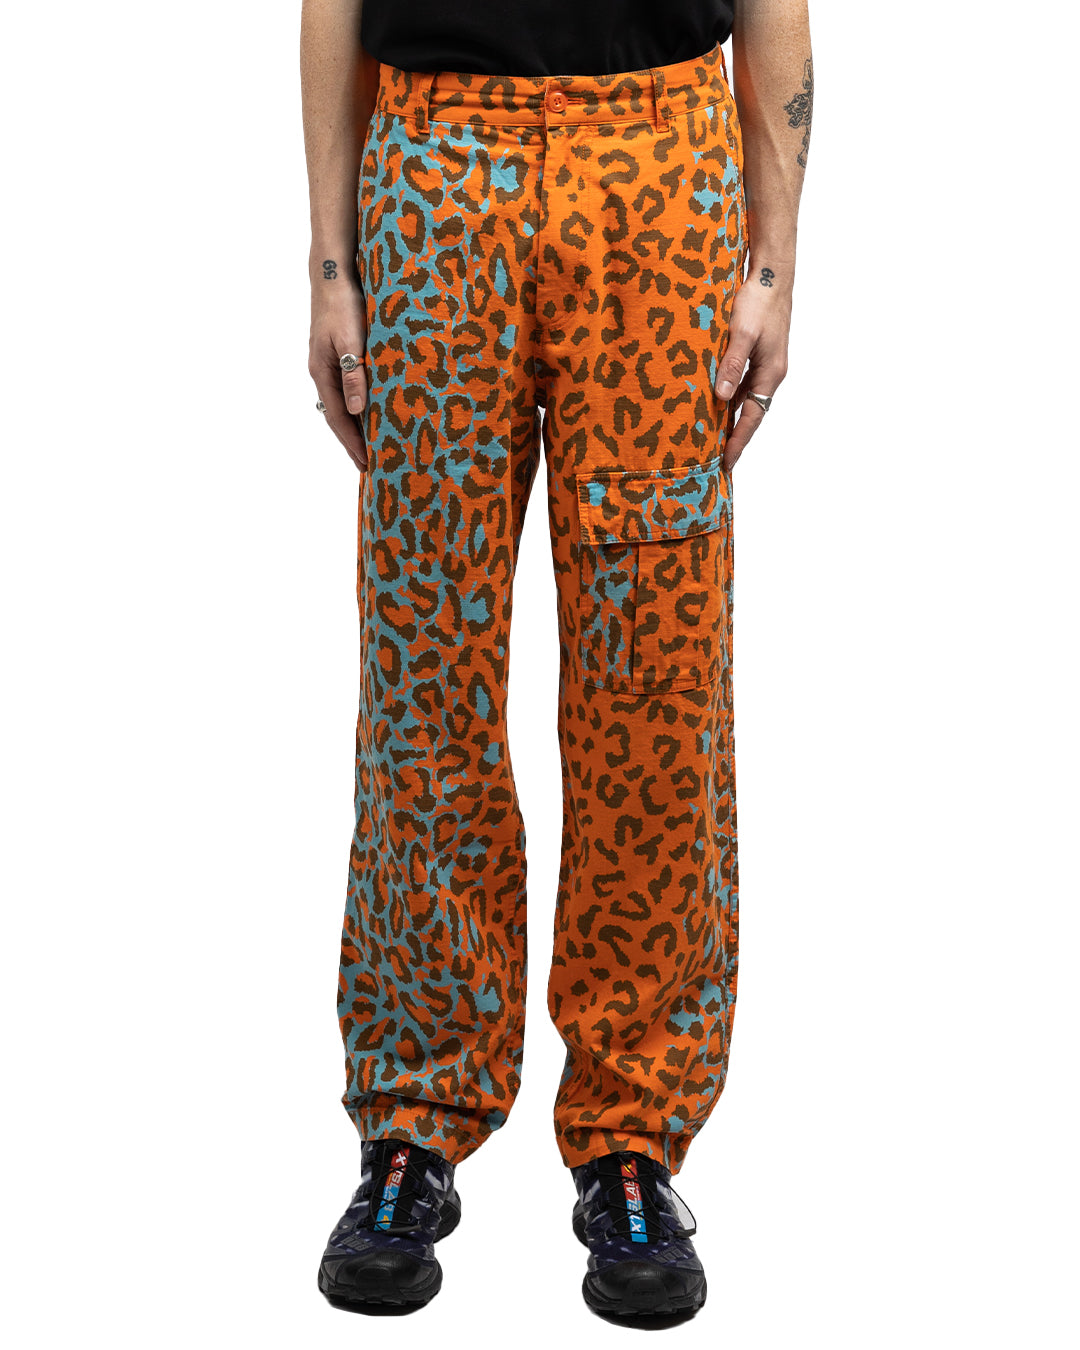 Awake NY Military Cargo Pants Printed Leopard